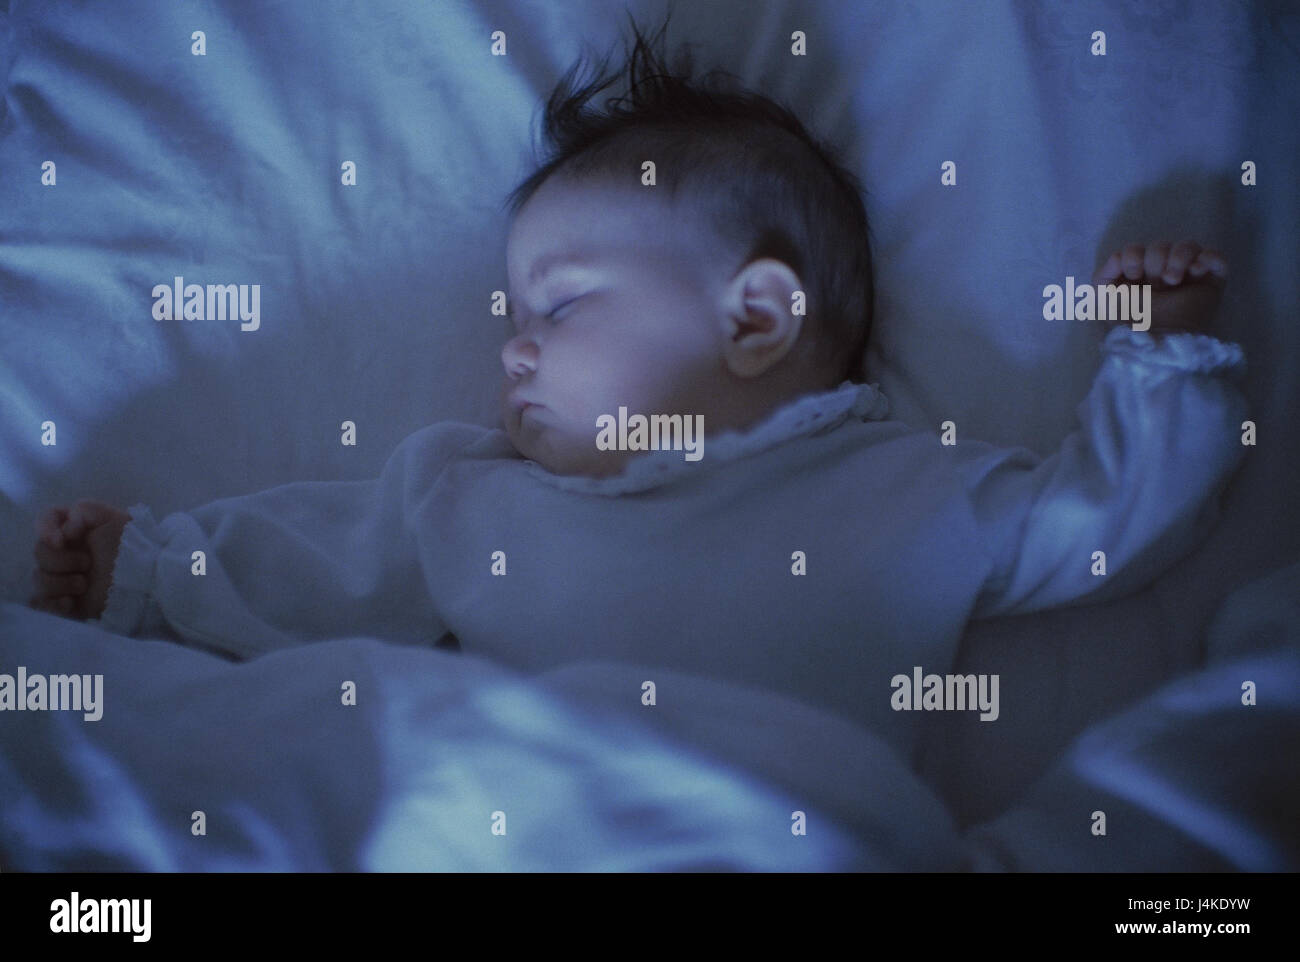 Kinderbett, Baby, Schlaf Bett, Baby, Mädchen, 6 Monate, Rest, Rest,  Kindheit, Schlaf, müde, Müdigkeit, bekommen einer guten Nacht Schlaf, Ruhe,  friedlich, innen Stockfotografie - Alamy